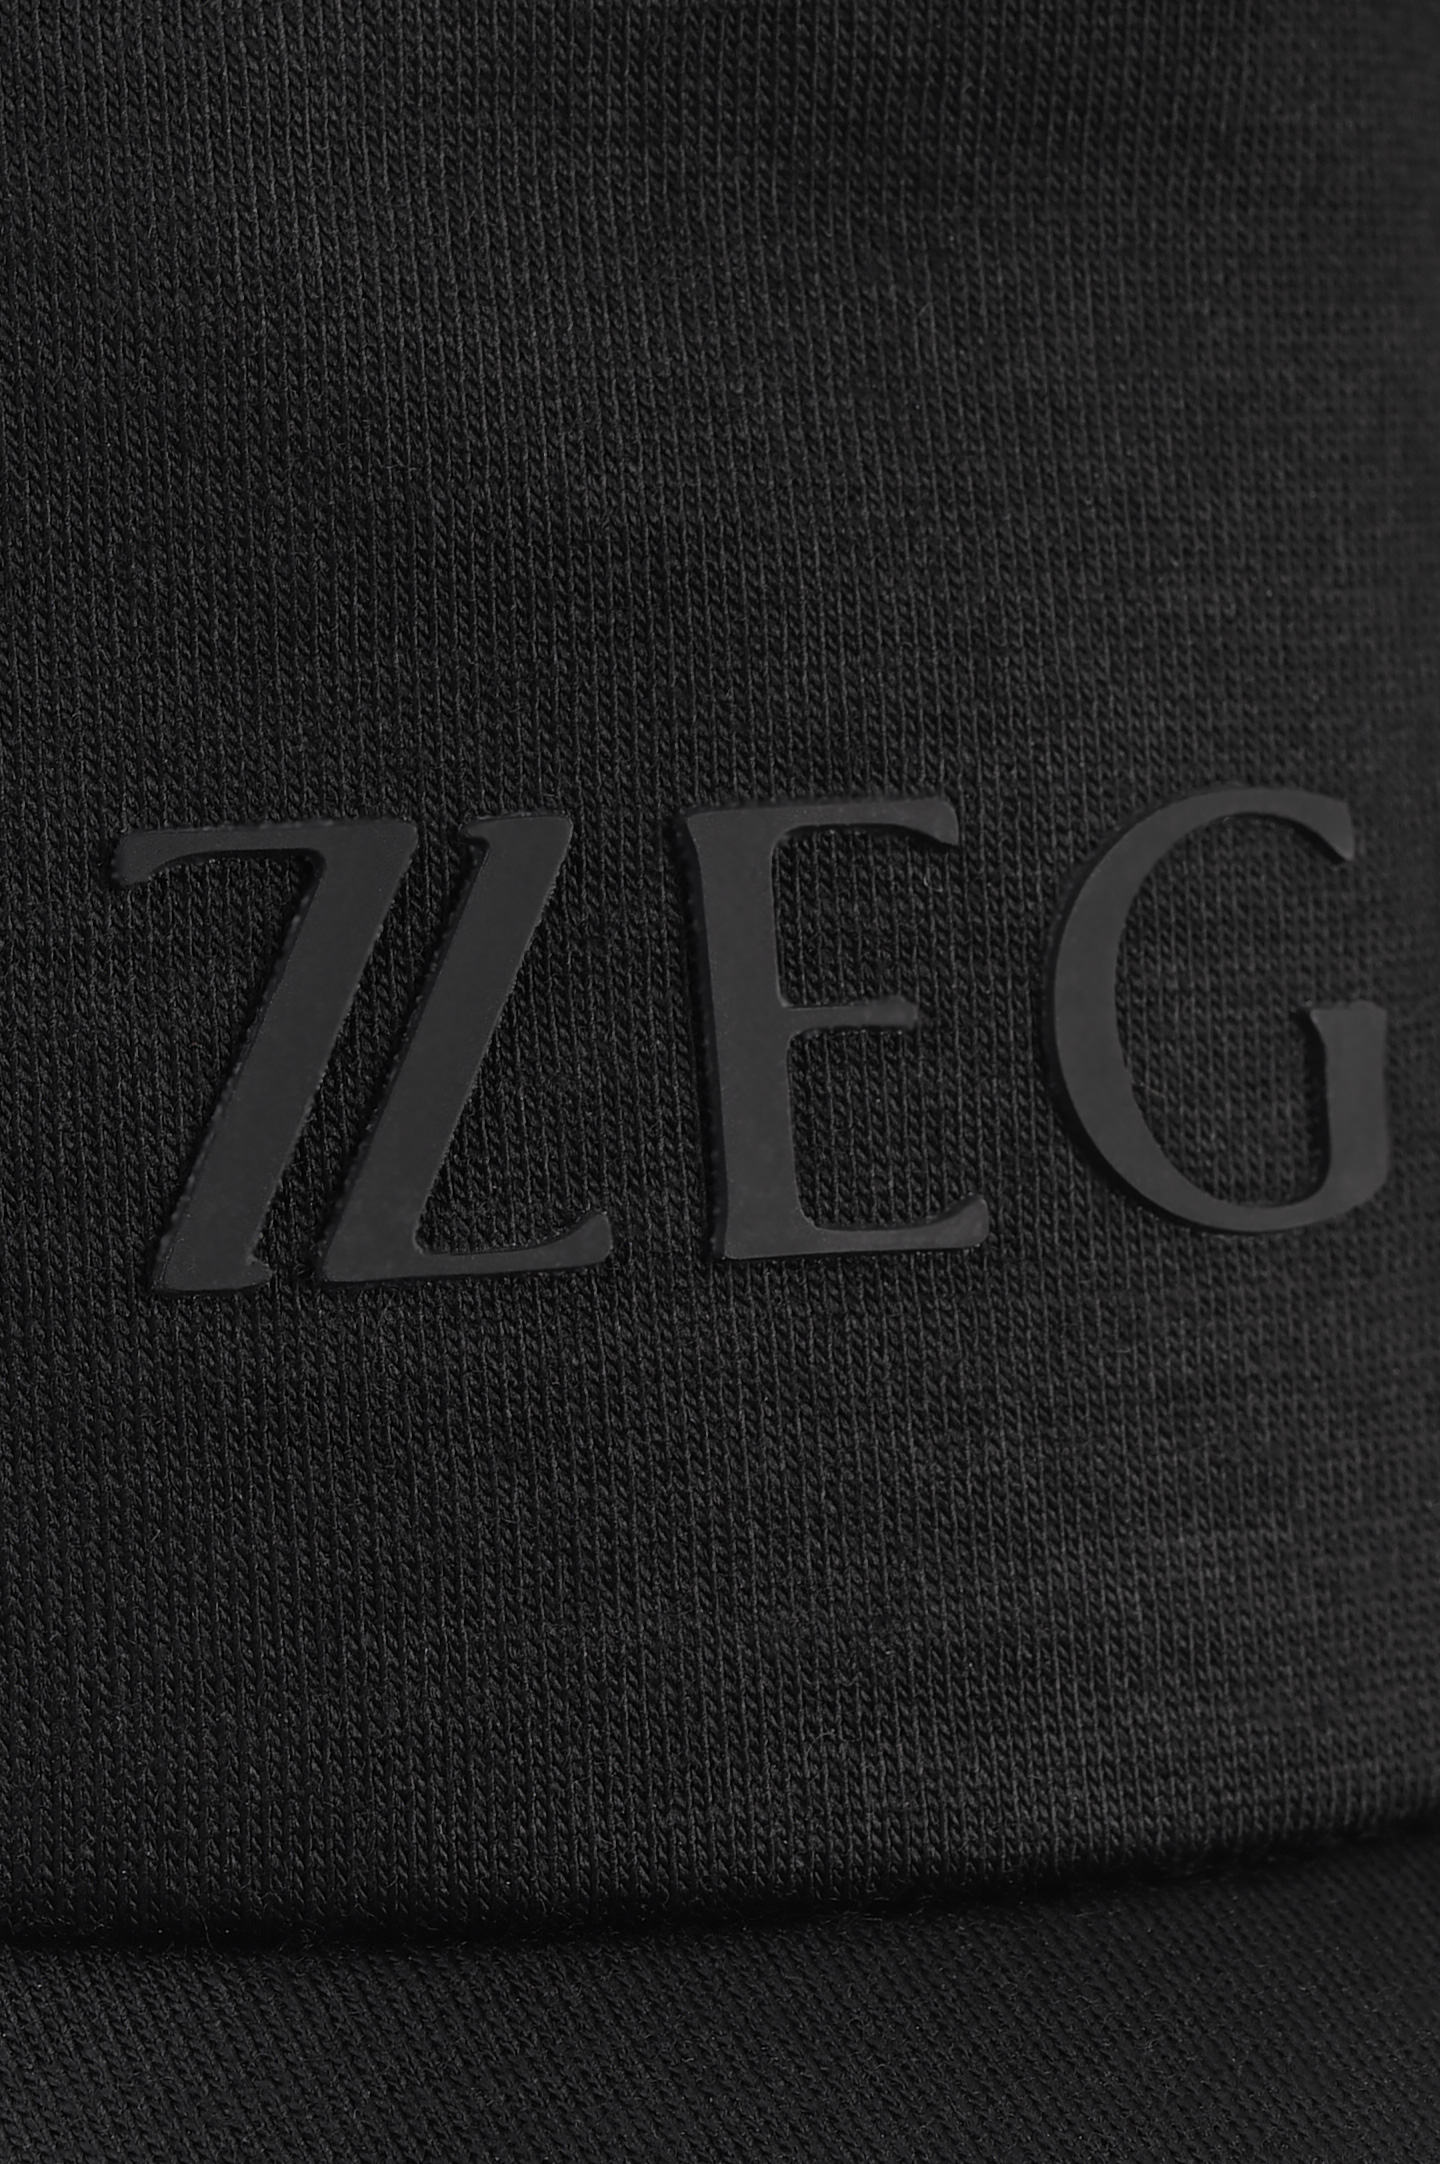 Кепка Z ZEGNA Z2I71H B9I, цвет: Черный, Мужской